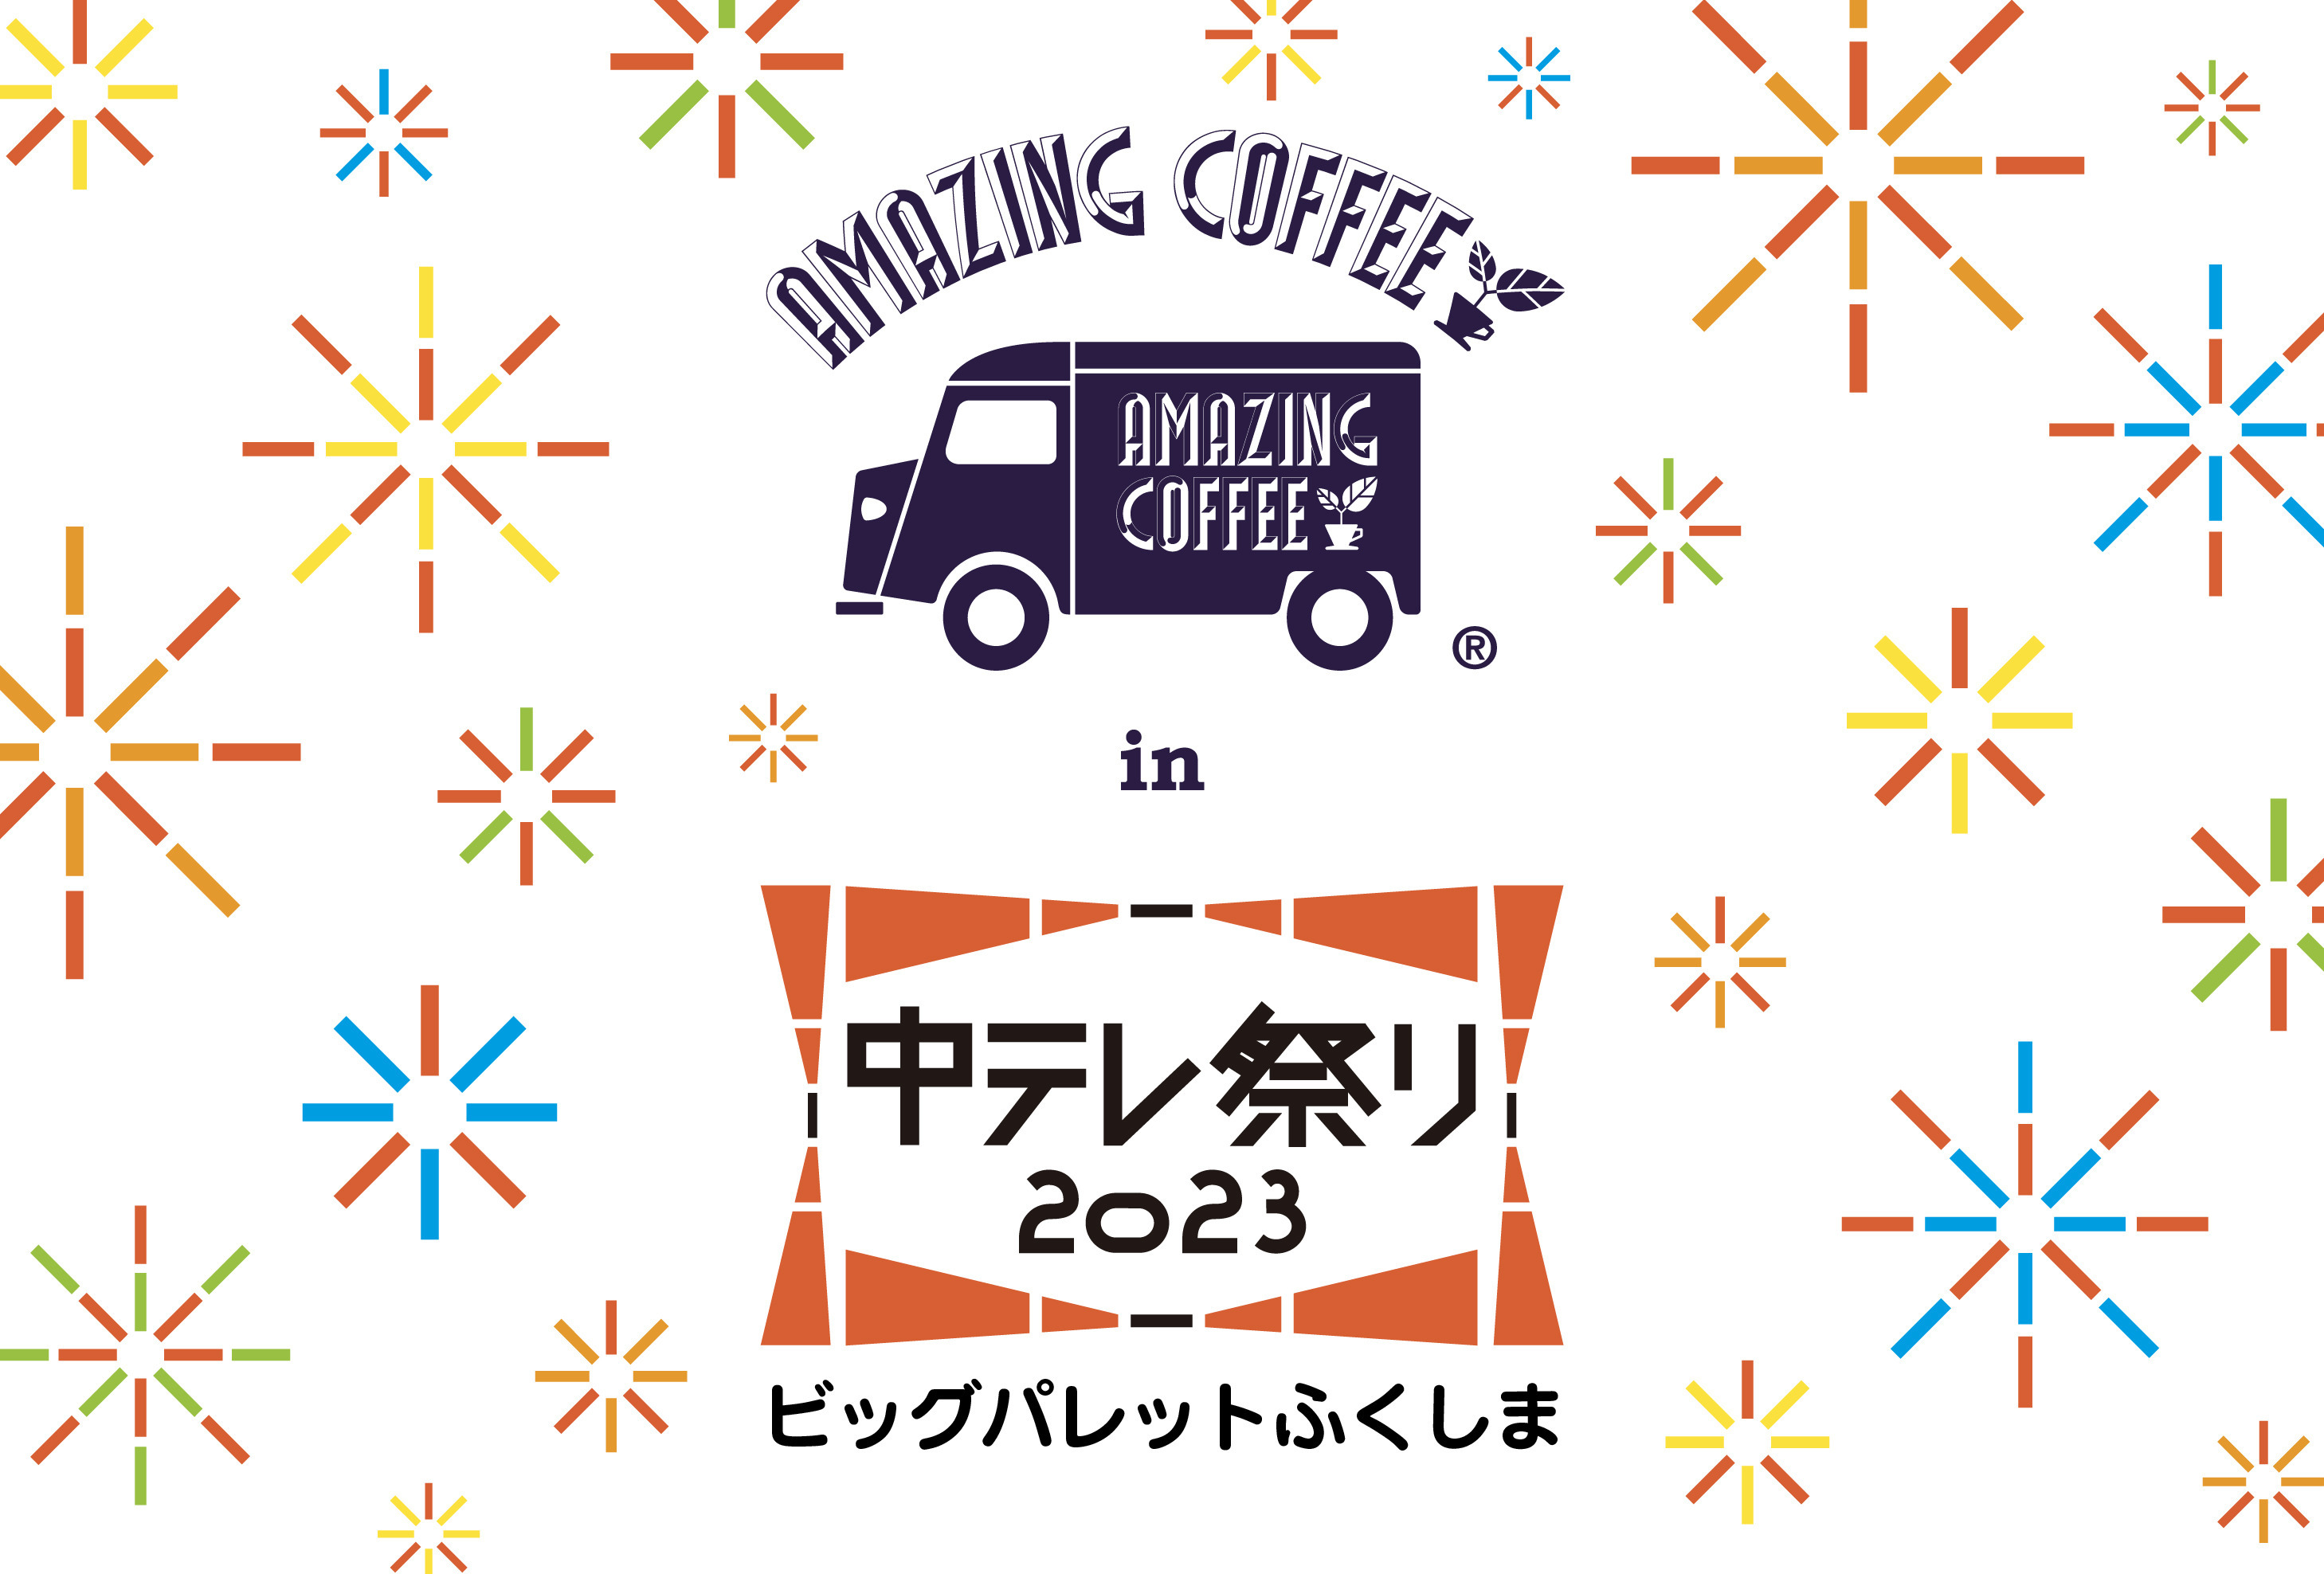 【2023.3/24(金)〜3/26(日) 3日間開催!!】✨AMAZING COFFEE in 中テレ祭り2023☕️